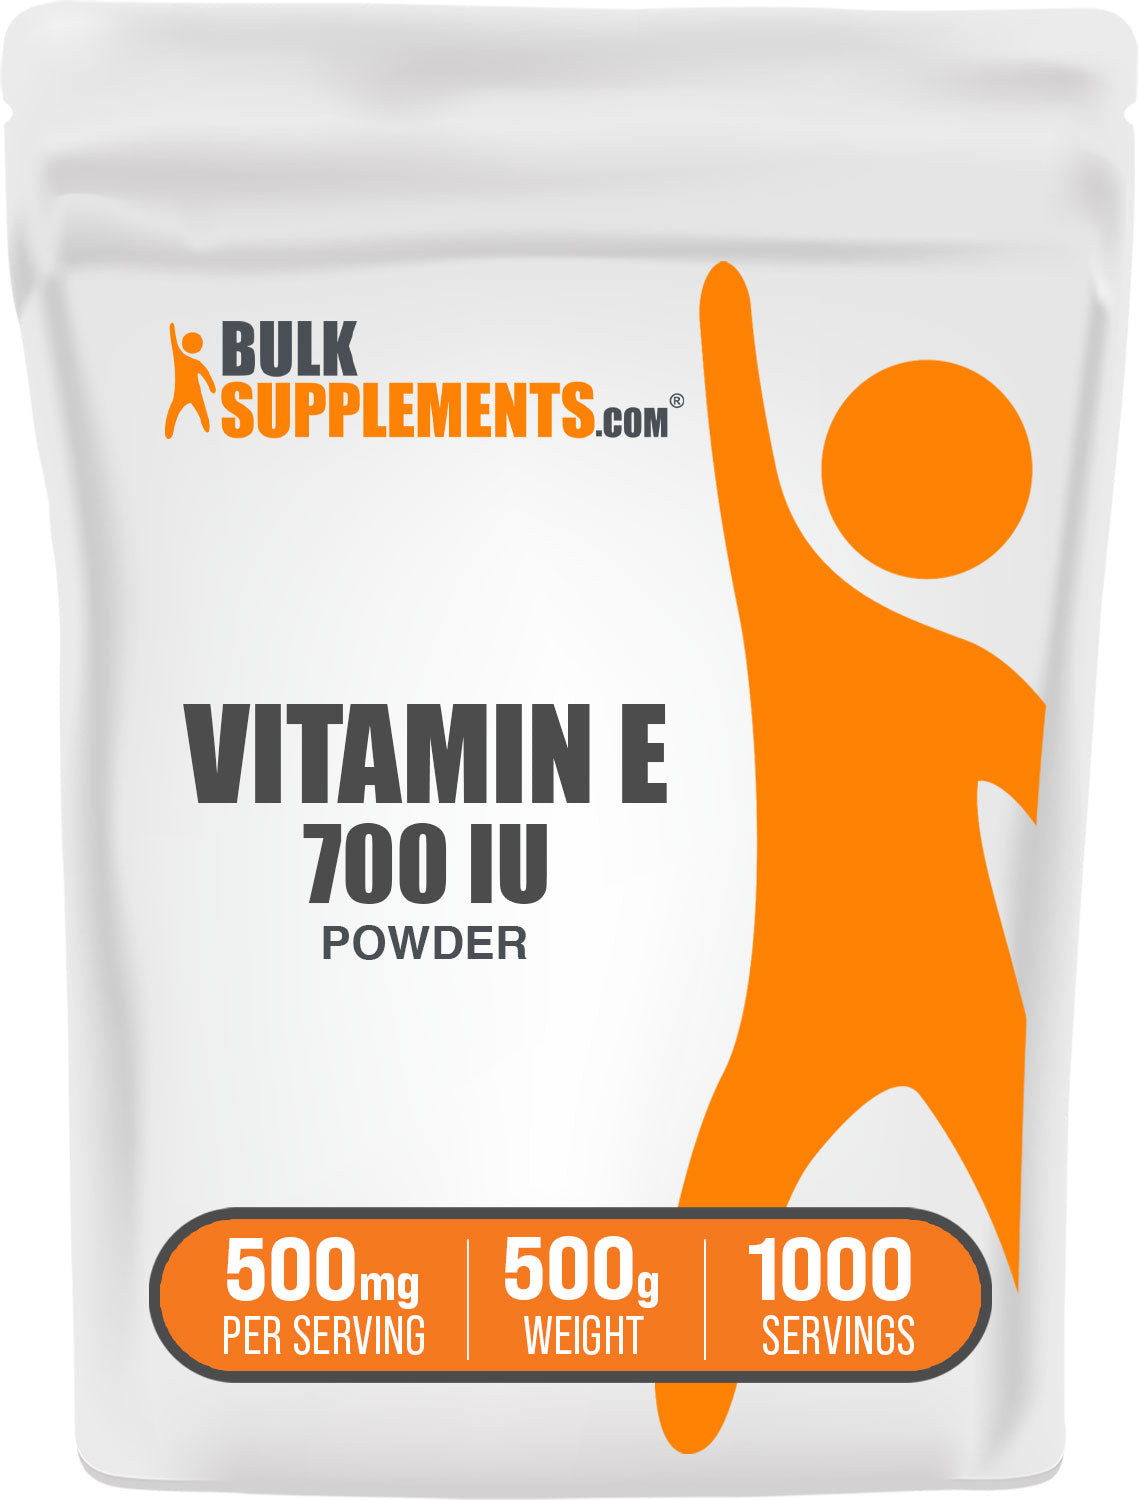 BulkSupplements.com Vitamin E 700 IU Powder 500g bag